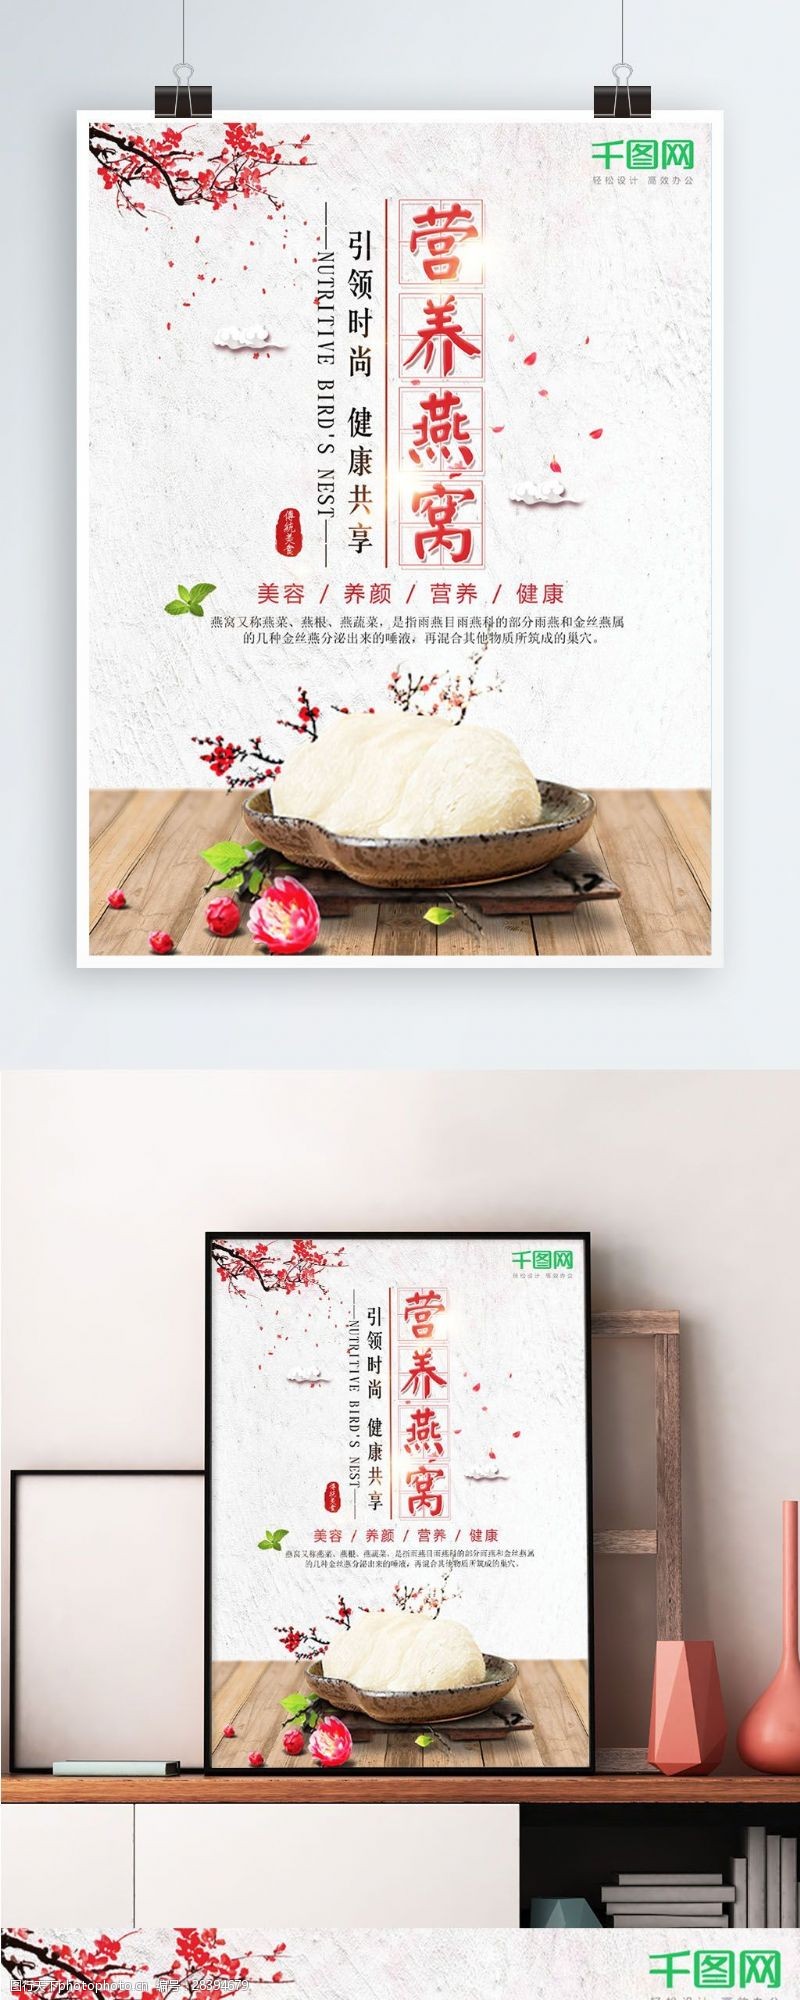 冬虫夏草展板简约中国风燕窝养生滋补食疗海报设计